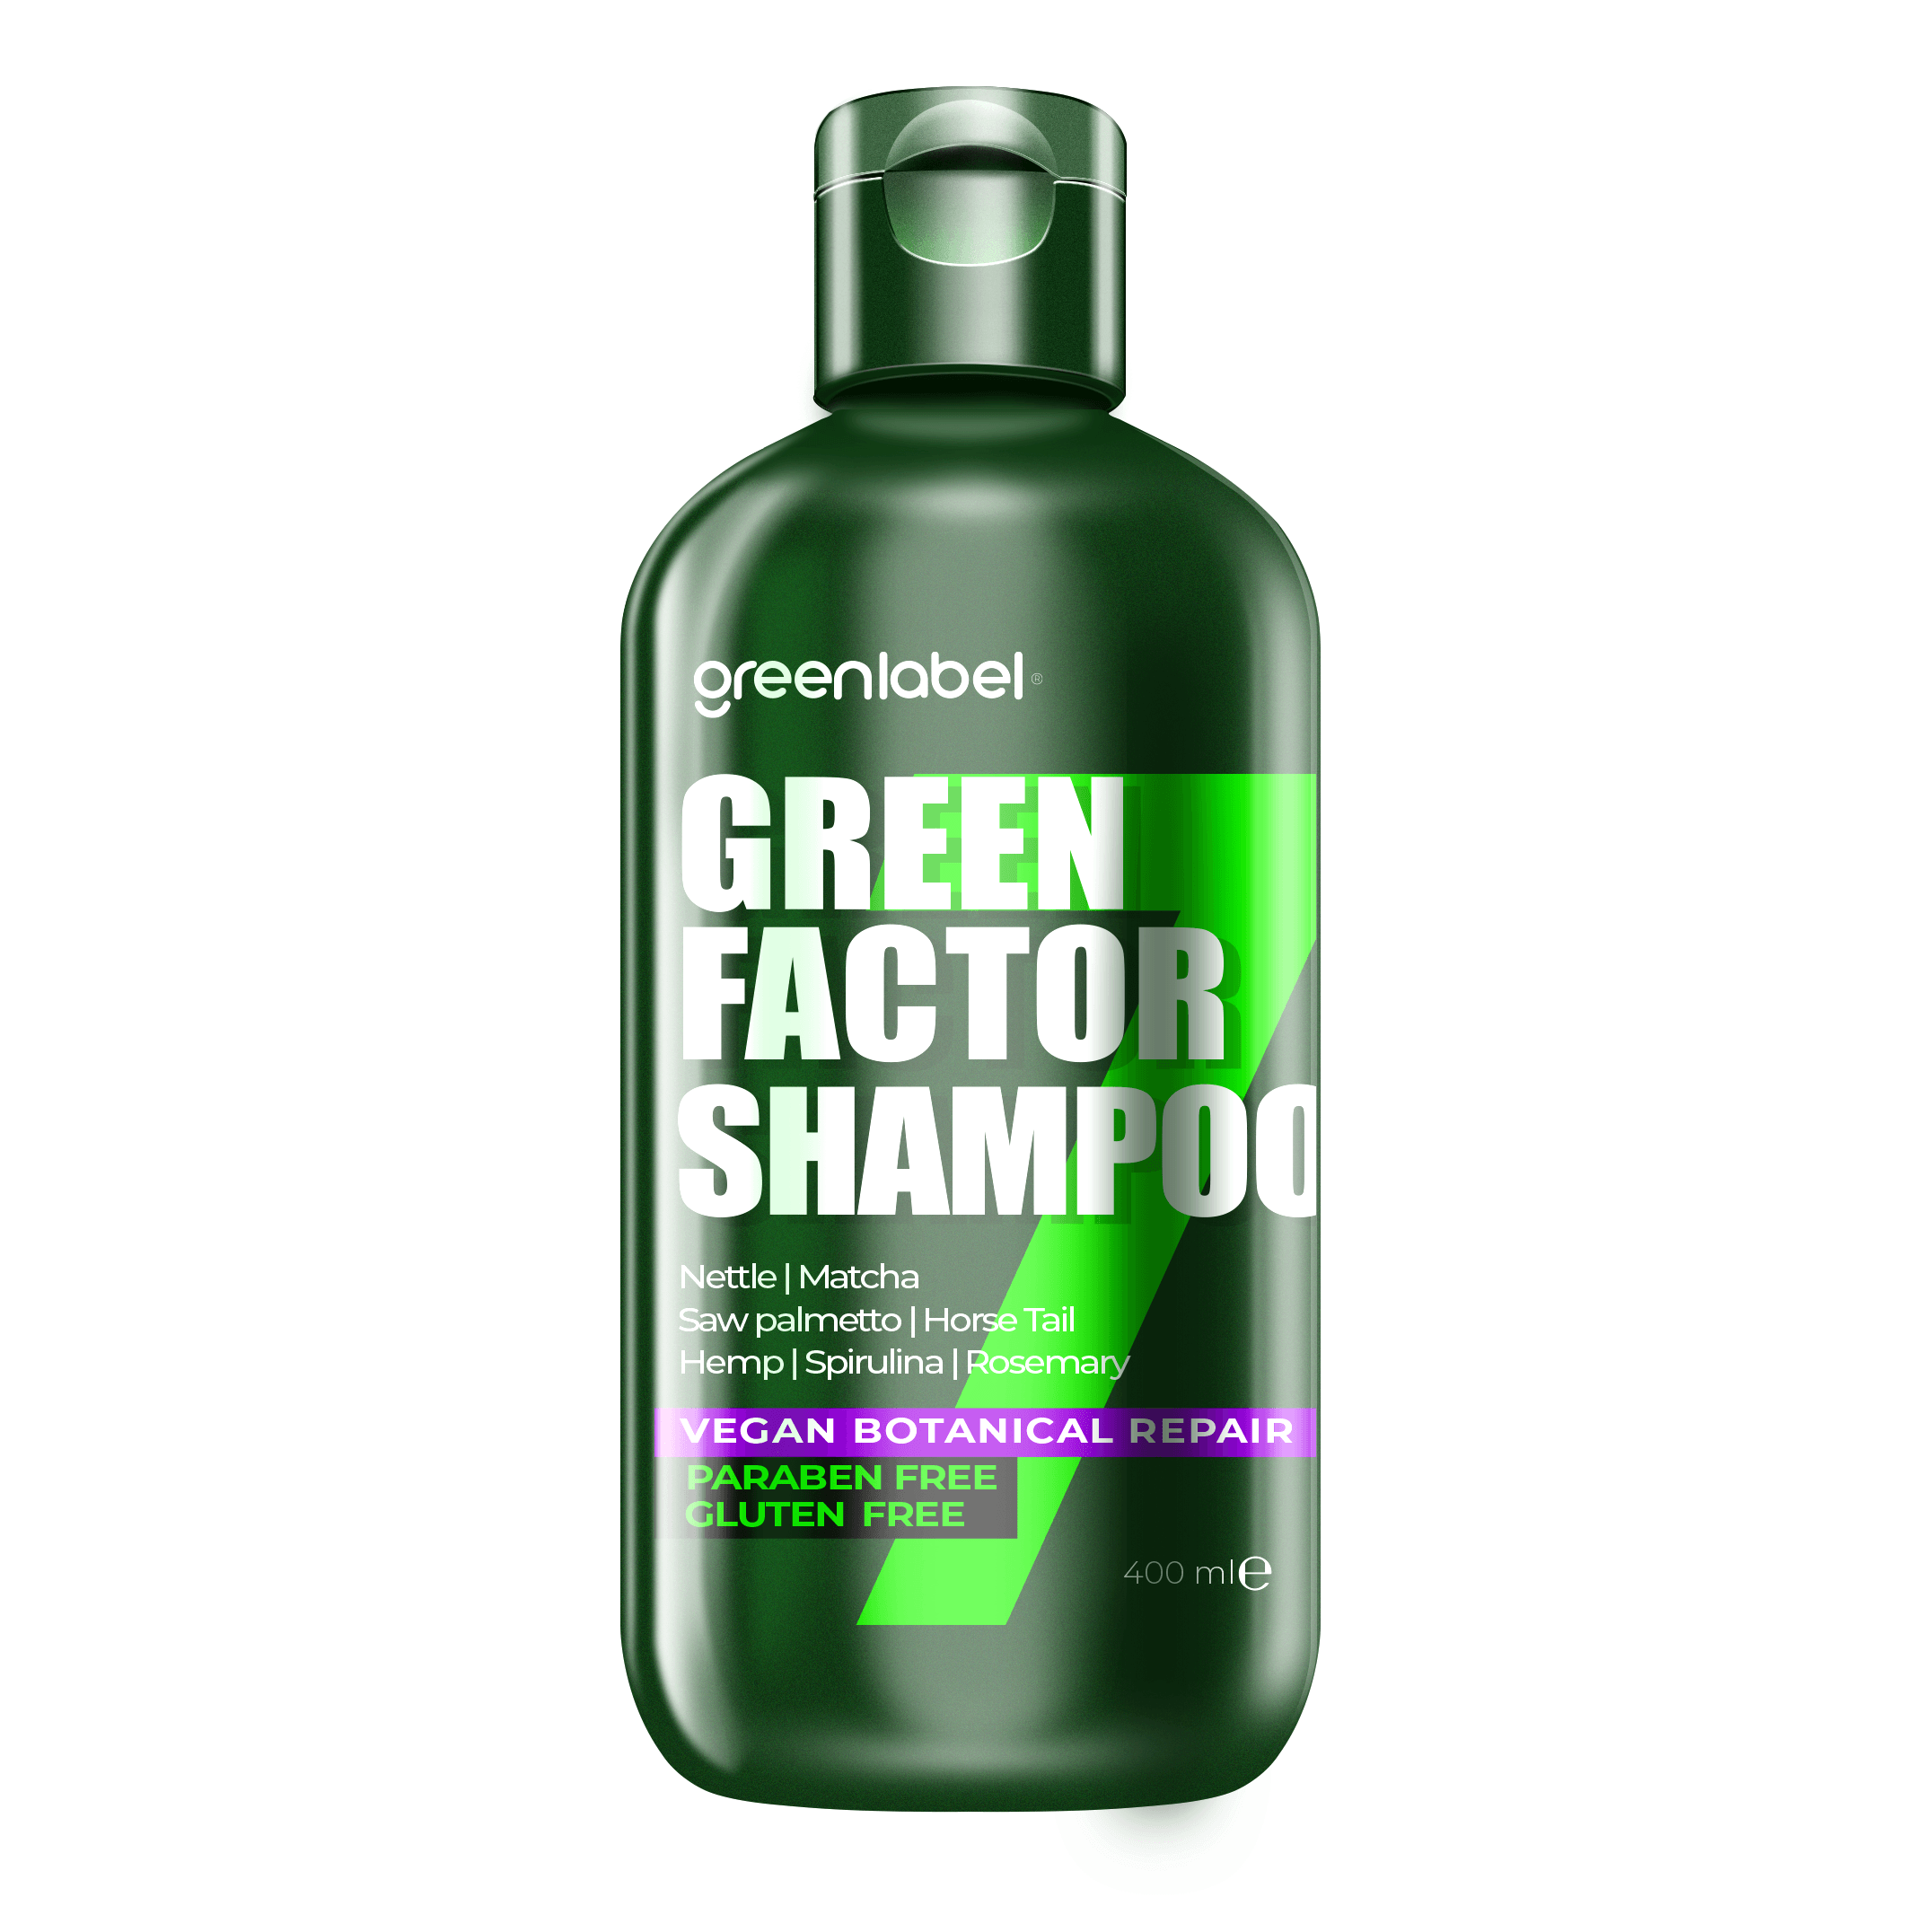 Green Factor 7 Herbal Vegan Paraben-Free Gluten-Free Repairing and Intensive Care Shampoo 400ml. image